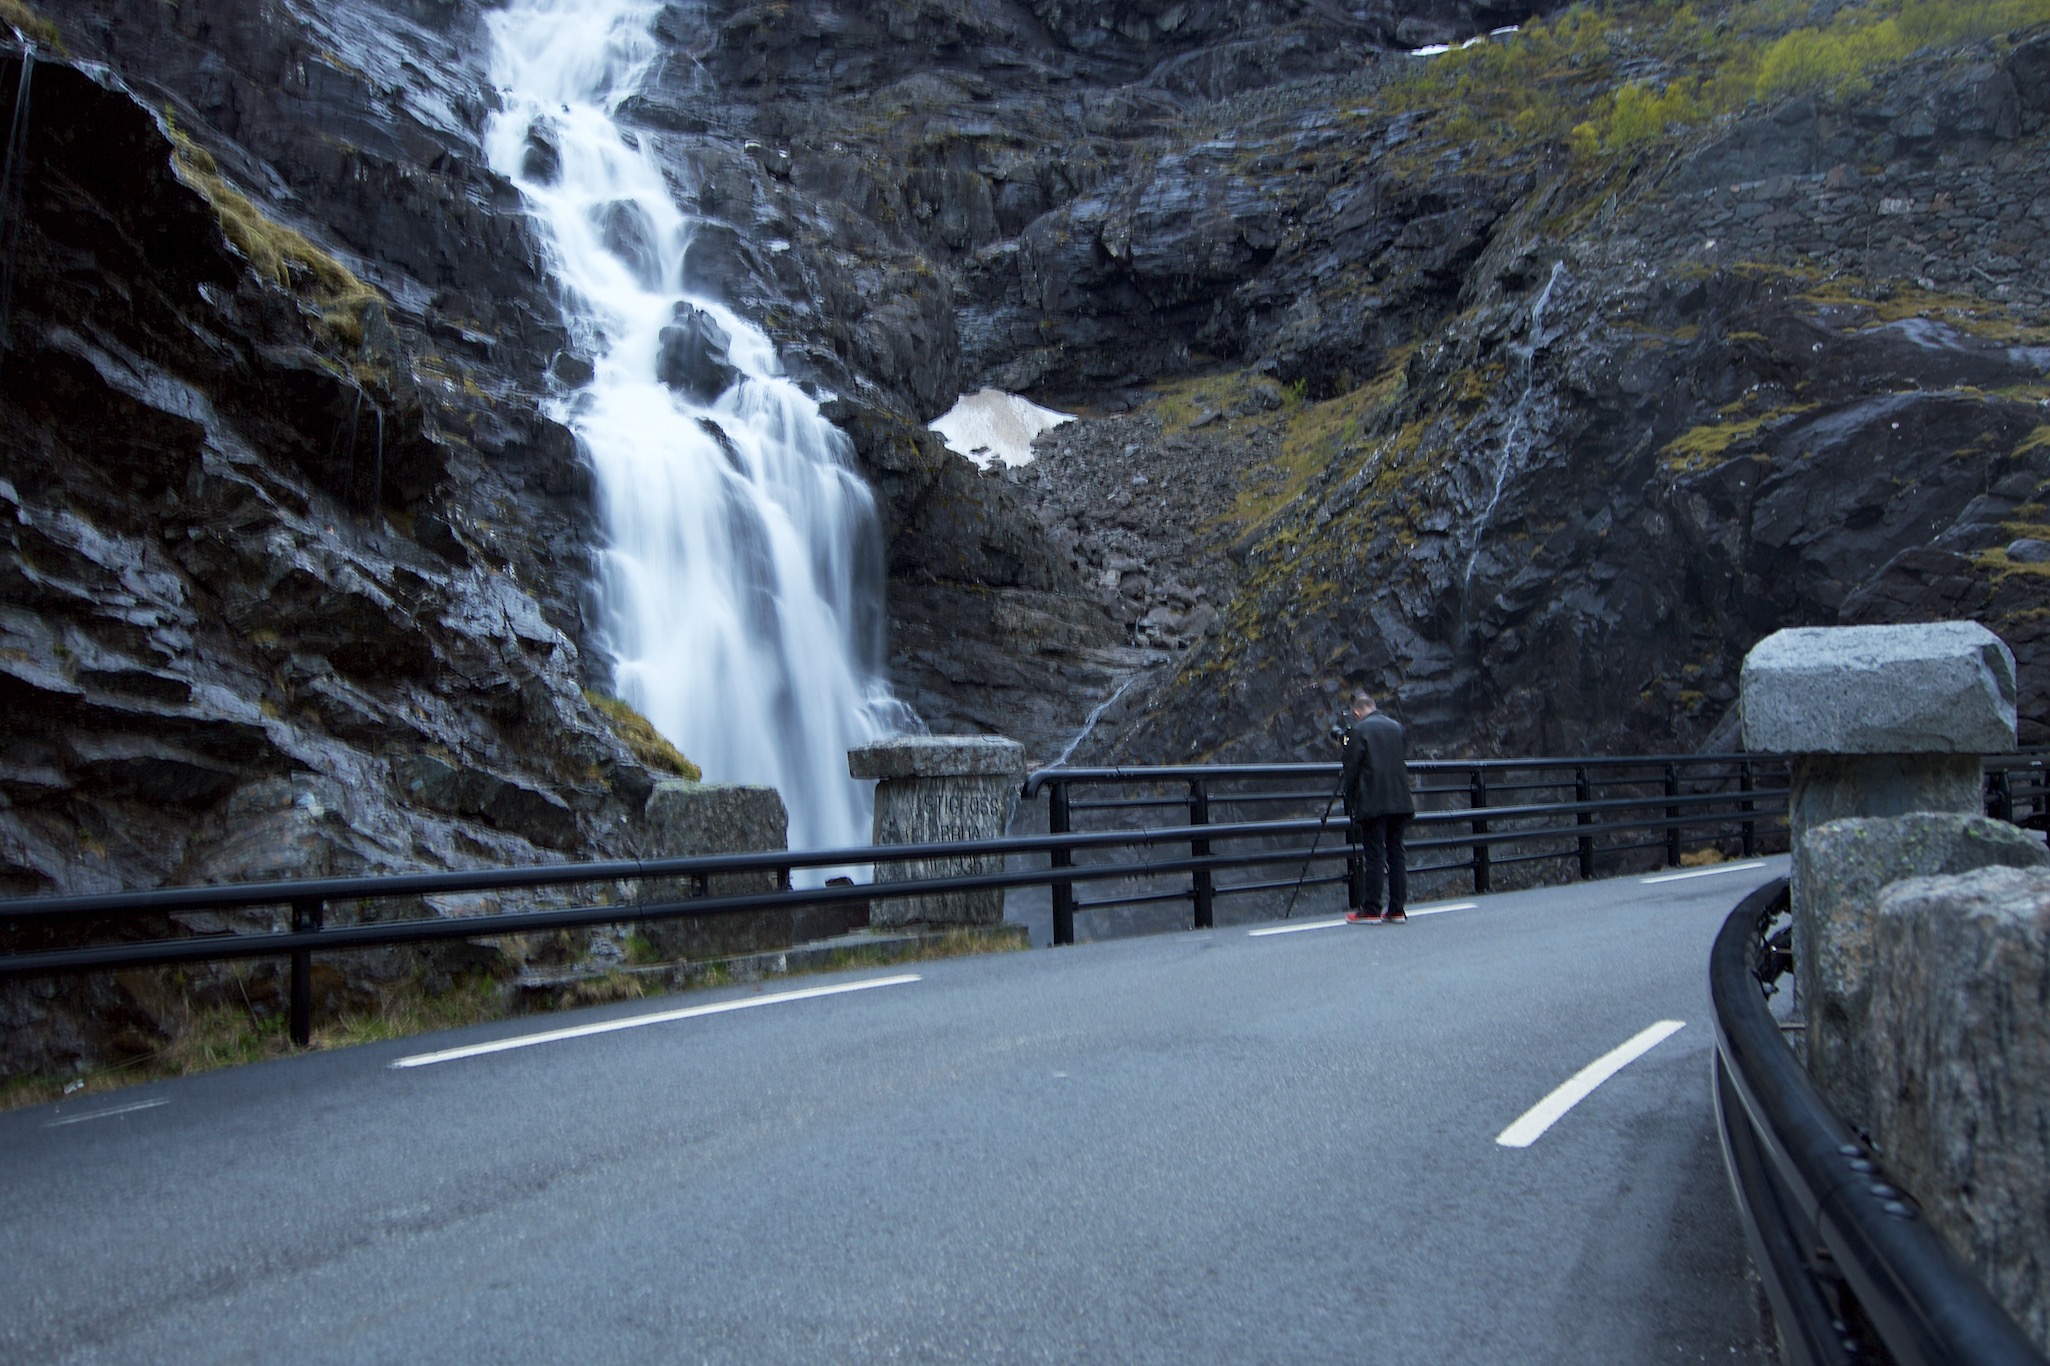 Taking photographs of a waterfall along the road in Trollstigen, Norway